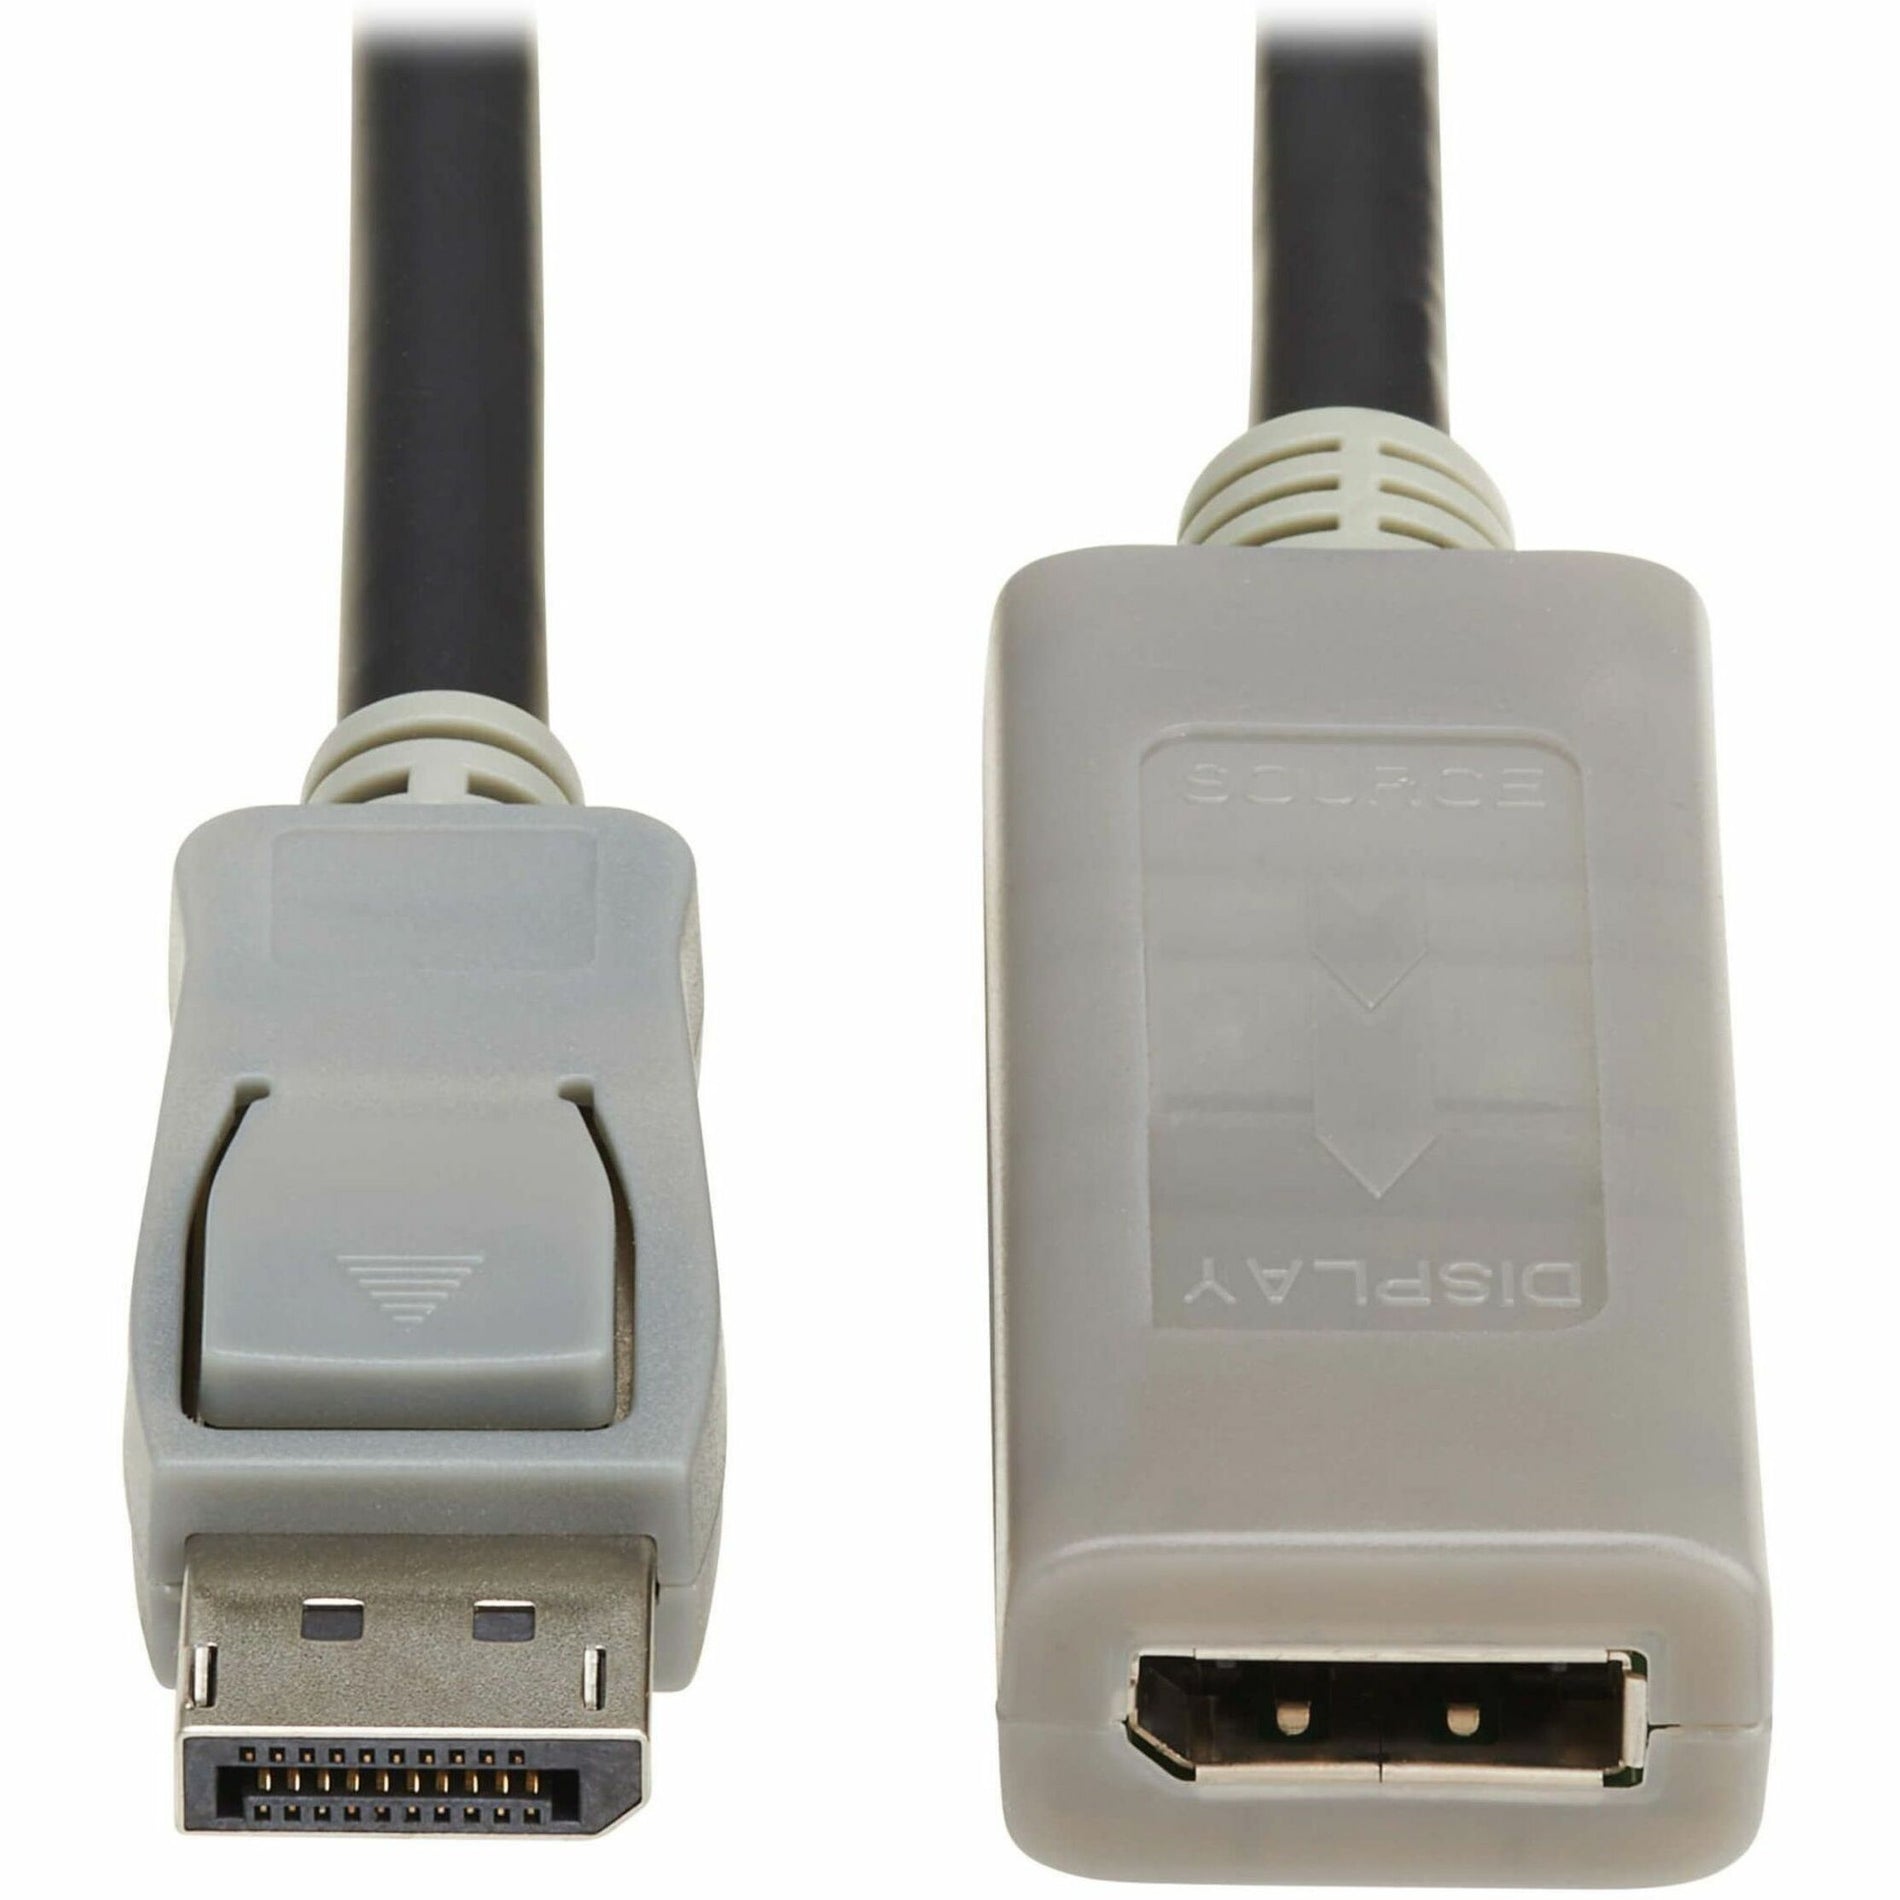 Tripp Lite P579-020-4K6 Display Port Verlängerung Audio/Video Kabel 20 ft HDR Unterstützung Passiv Greifender Stecker Rastender Stecker HDCP 2.2 Flexibel